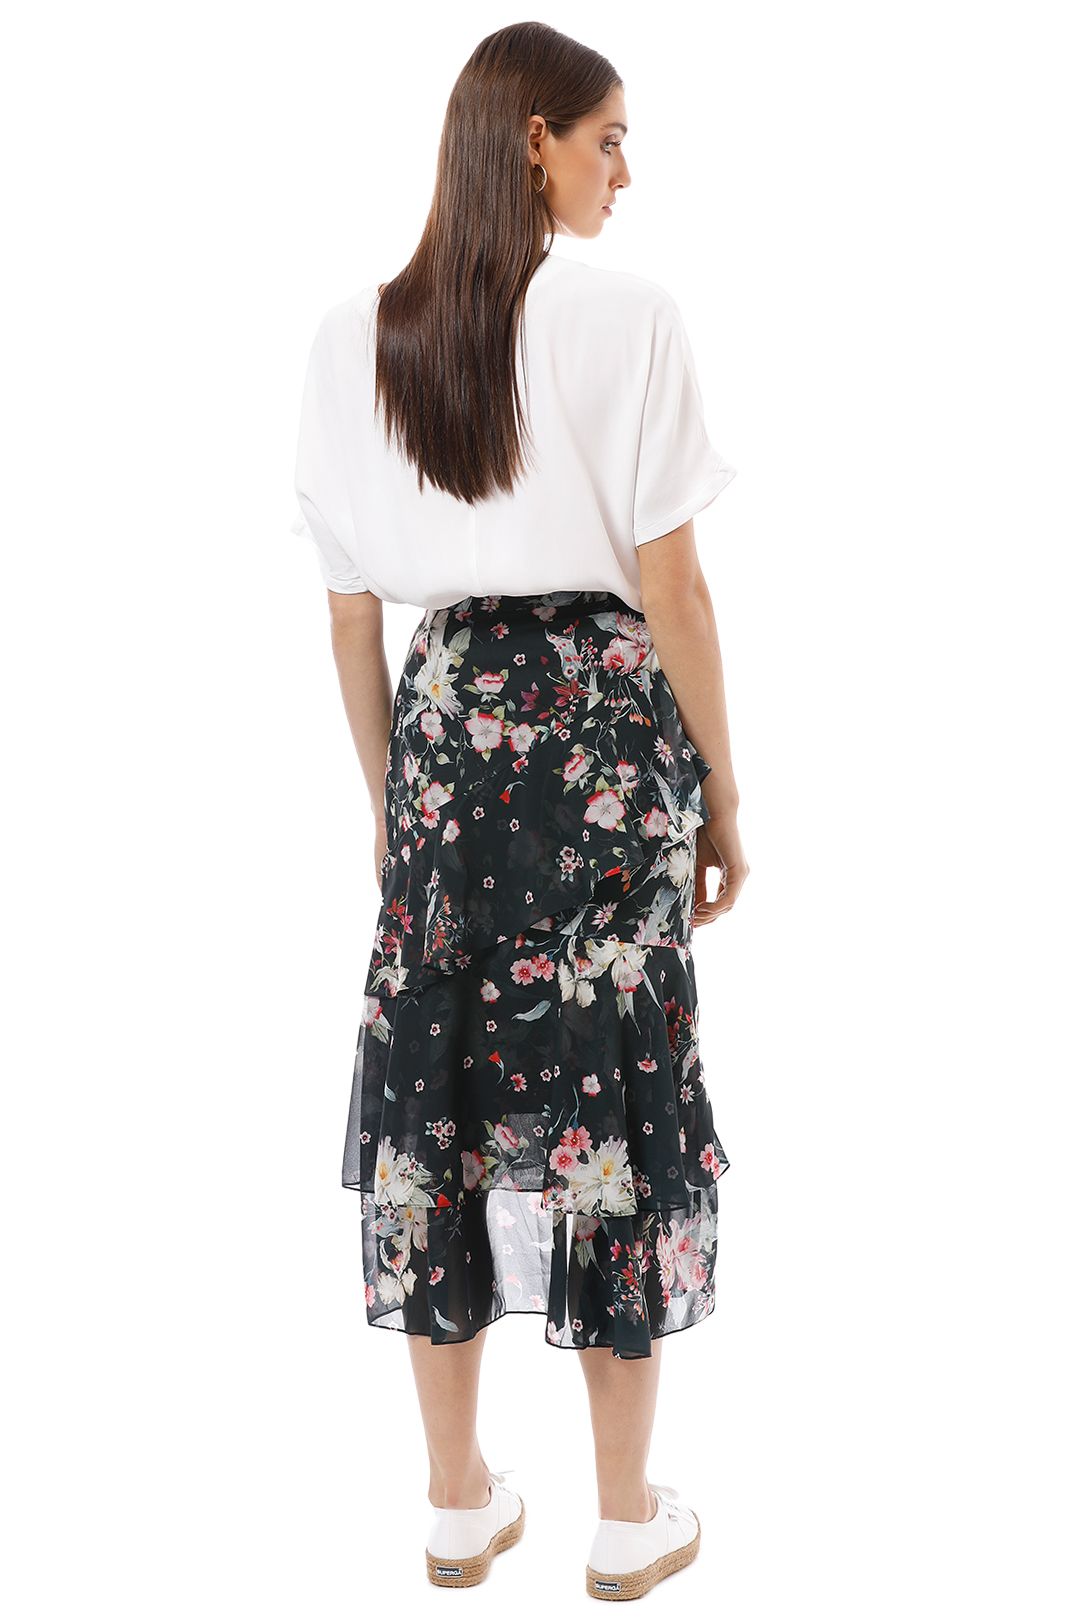 Cooper St - Titania Skirt - Multi - Back